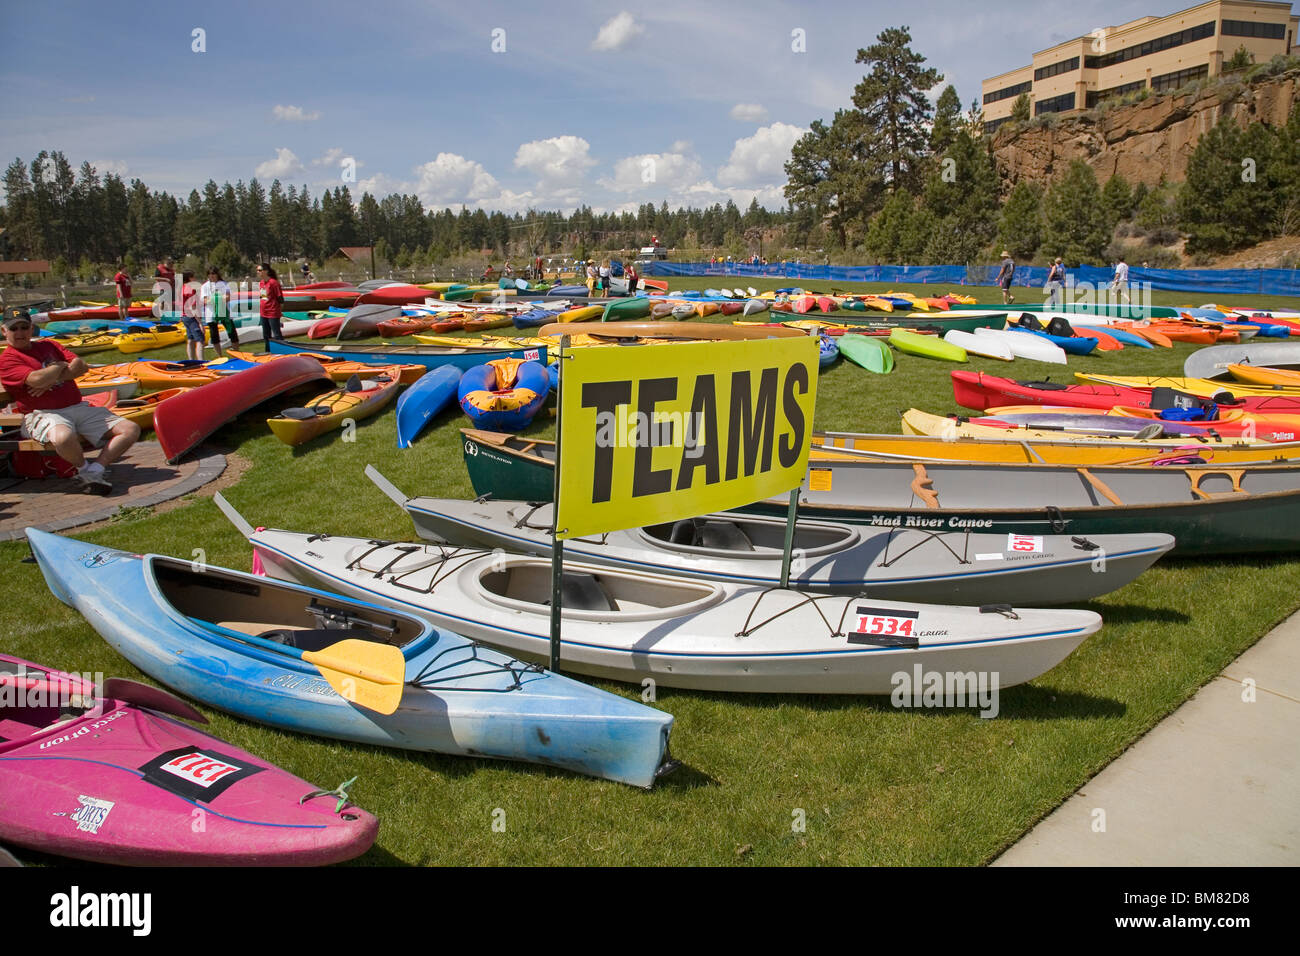 Le Pole-Pedal-Paddle événement sportif qui se déroule chaque année à Bend, Oregon, attire des milliers de tous les USA Banque D'Images